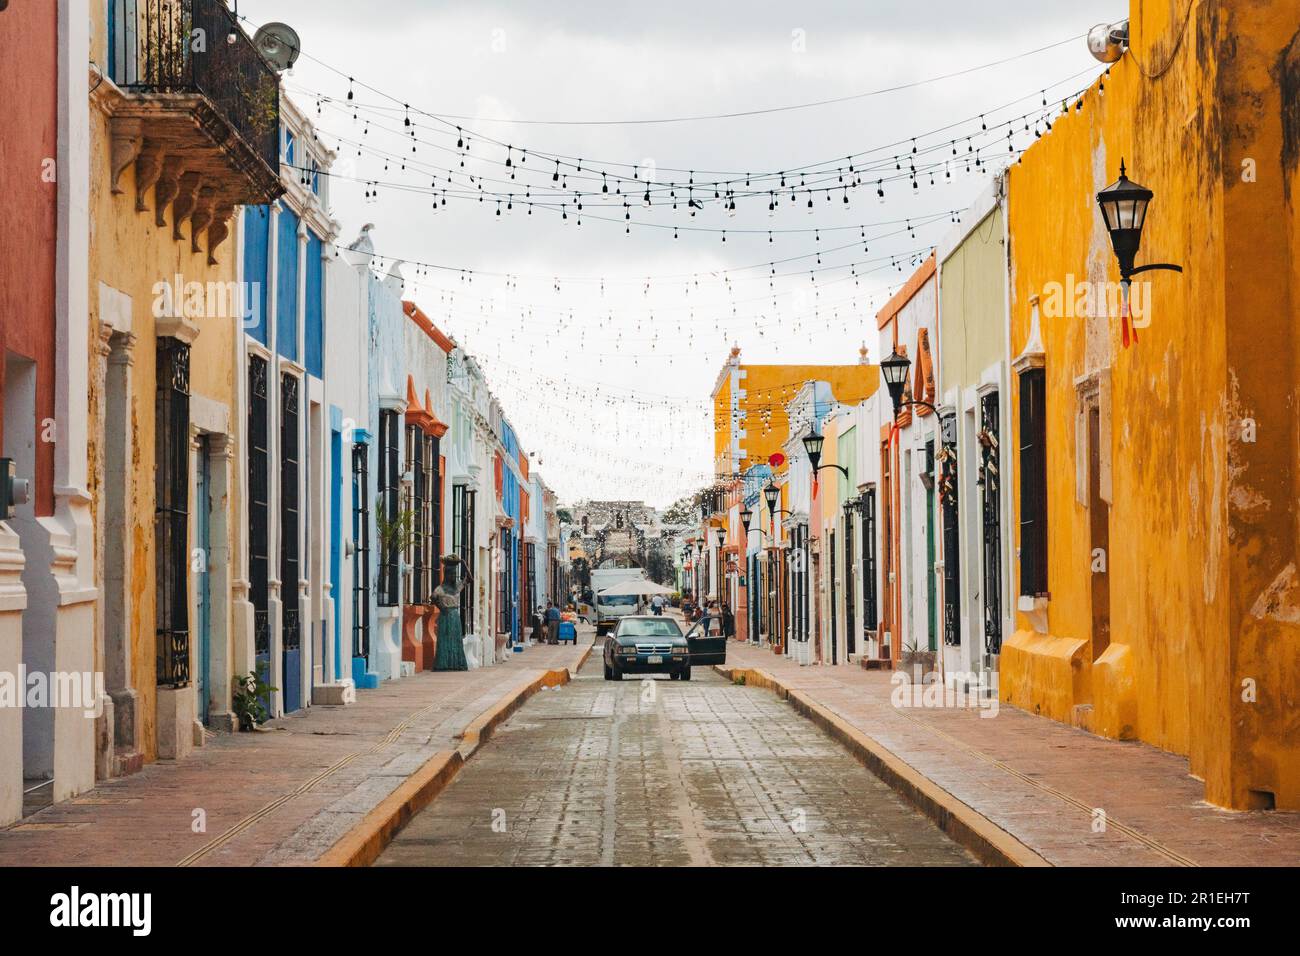 Edifici coloniali spagnoli dipinti in vari colori vivaci nel centro storico della città di Campeche, Messico Foto Stock